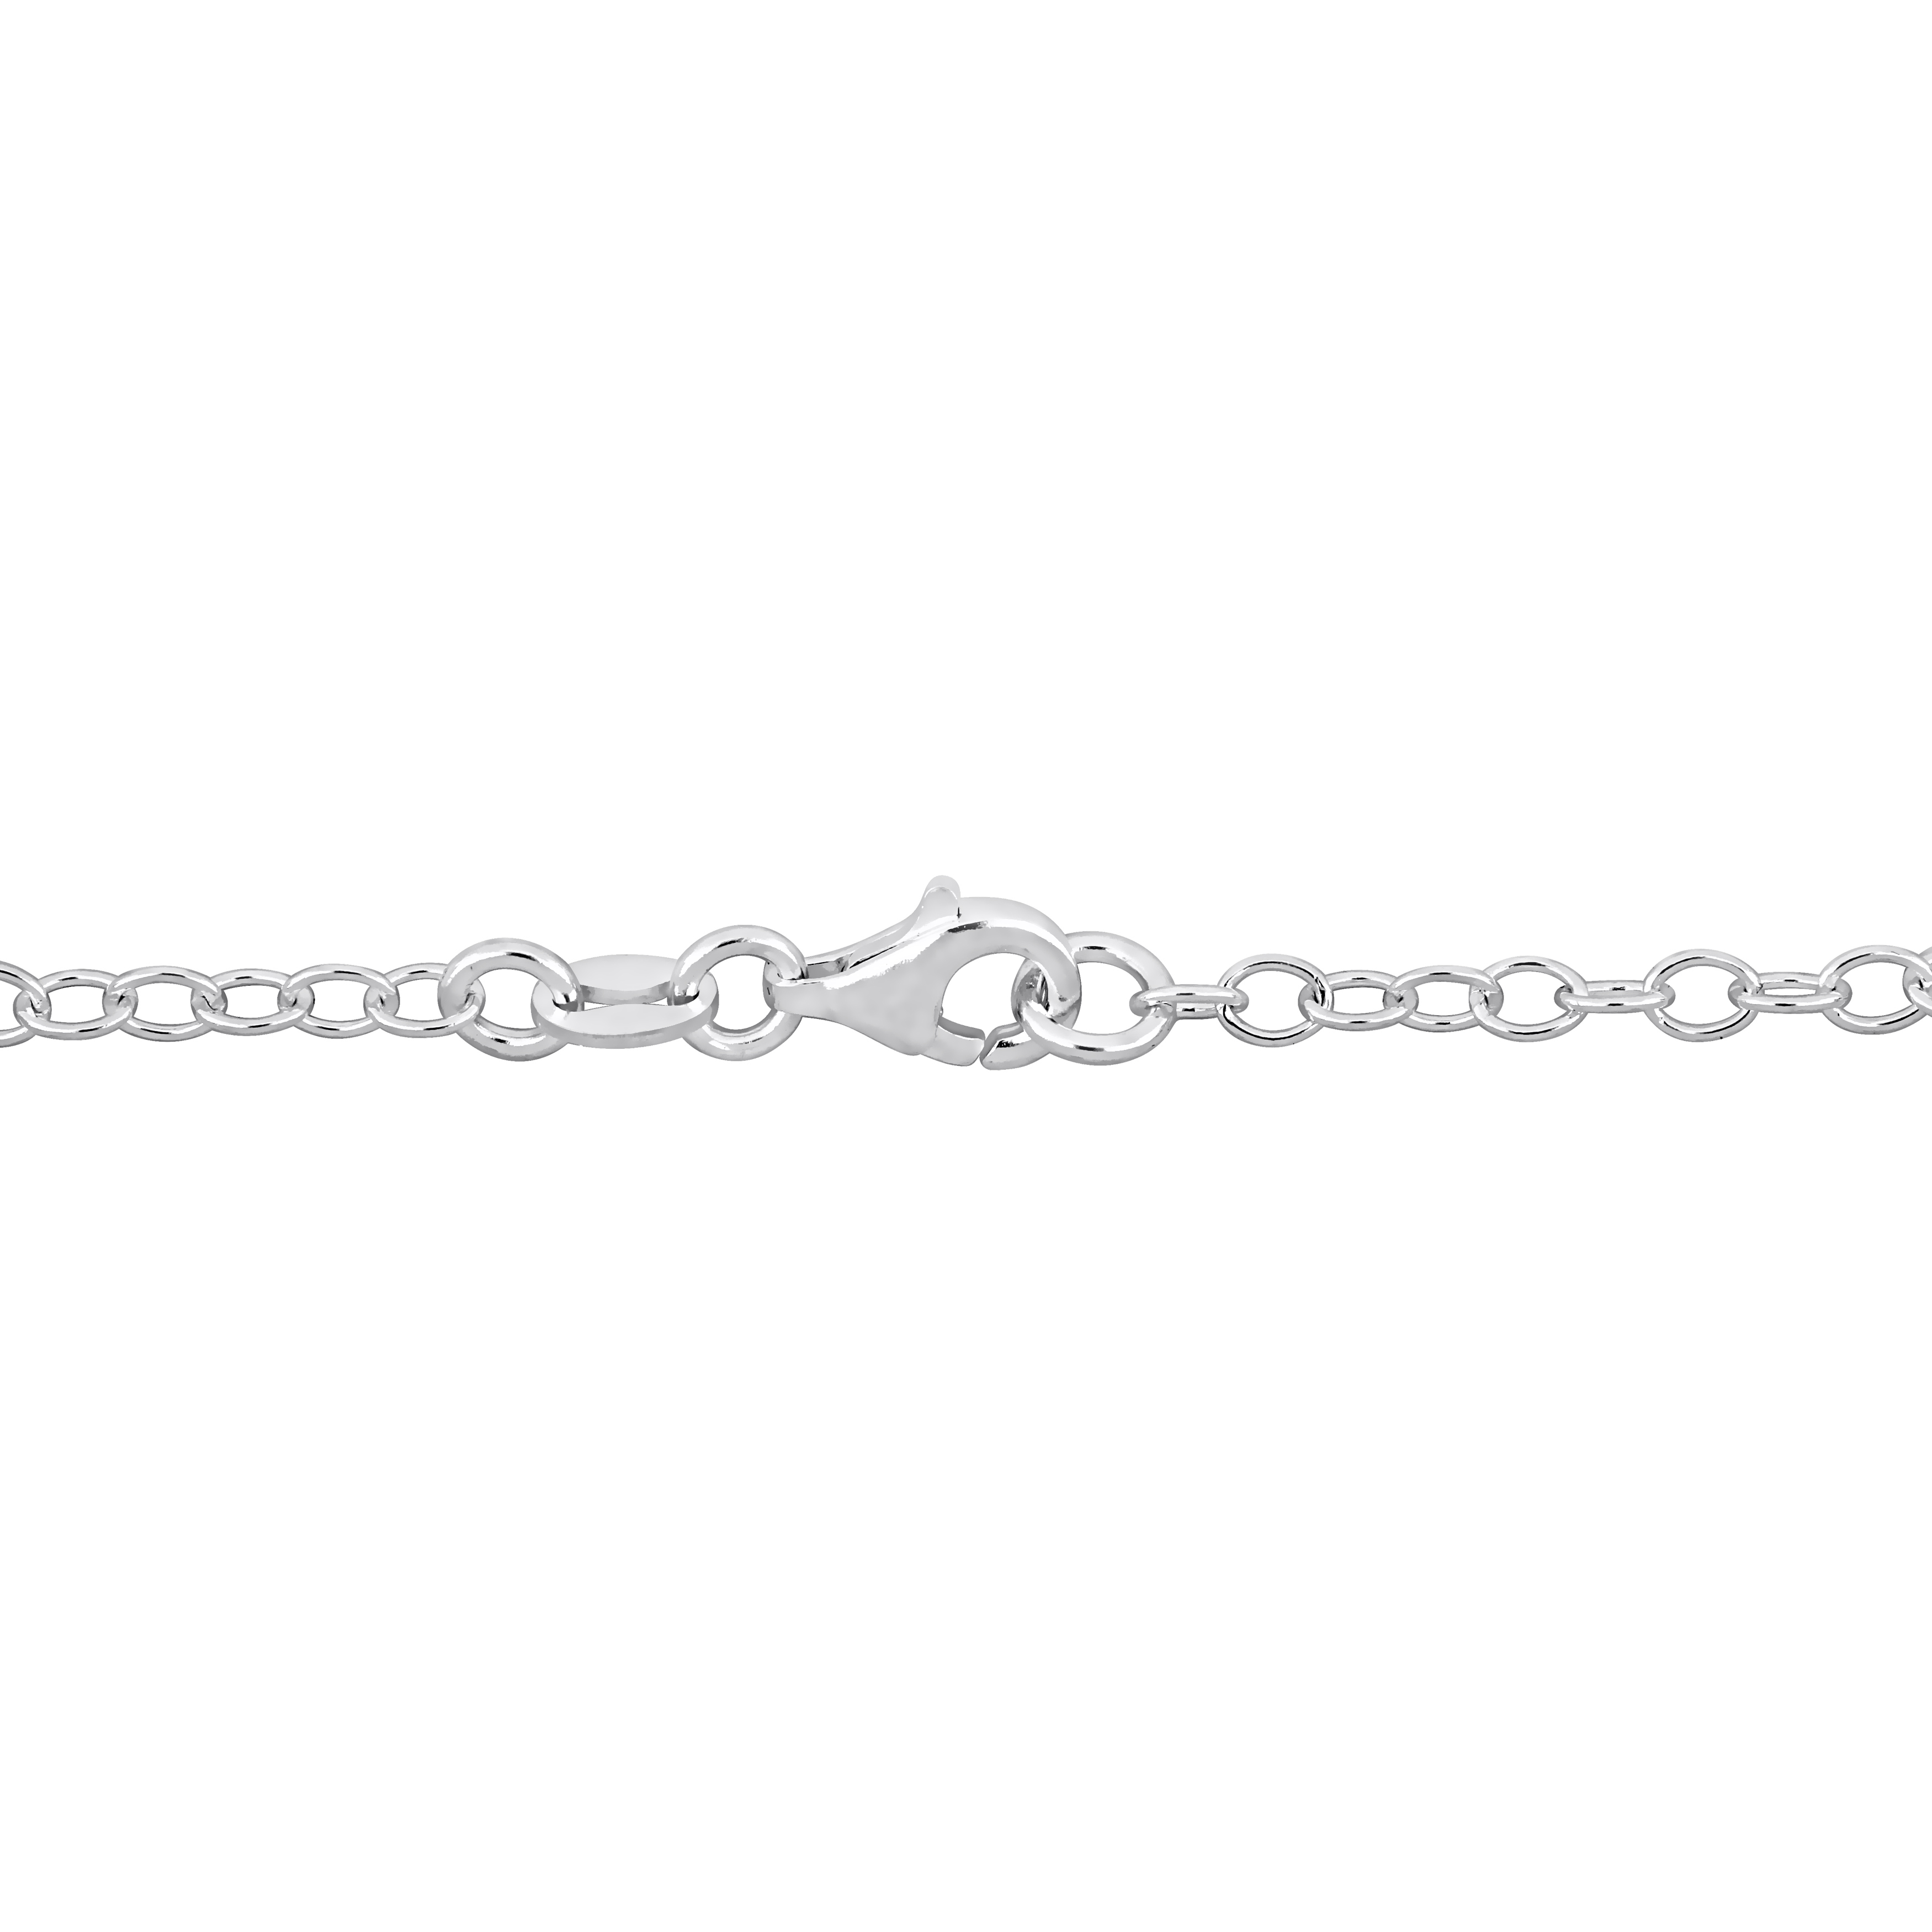 Multi-color Enamel Heart Charm Link Bracelet in Sterling Silver - 7.5 in.